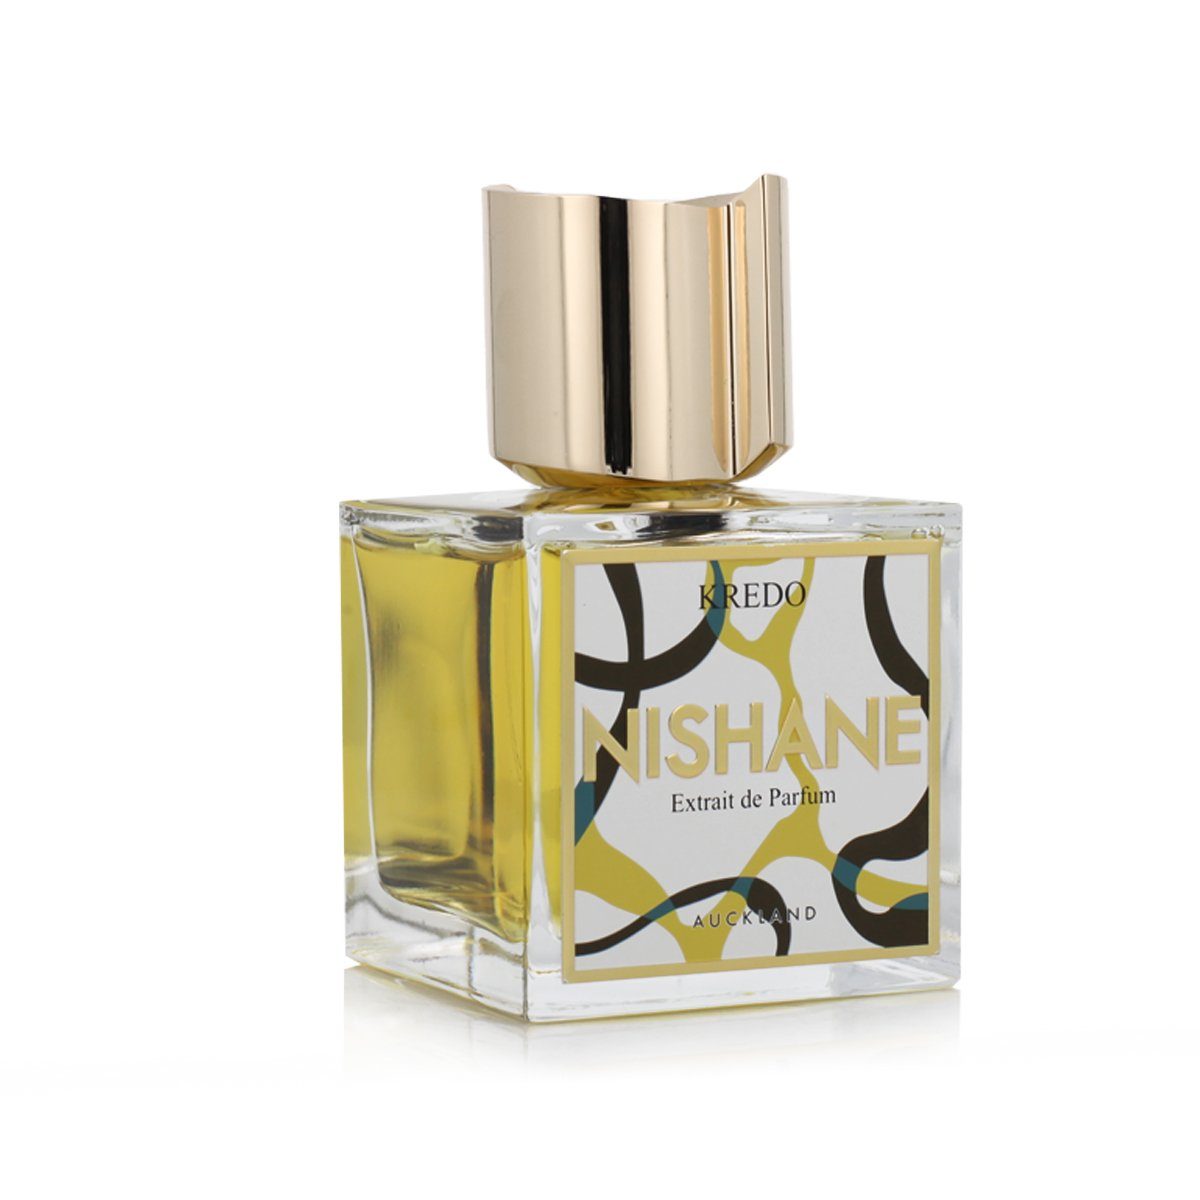 Nishane Extrait Parfum Kredo